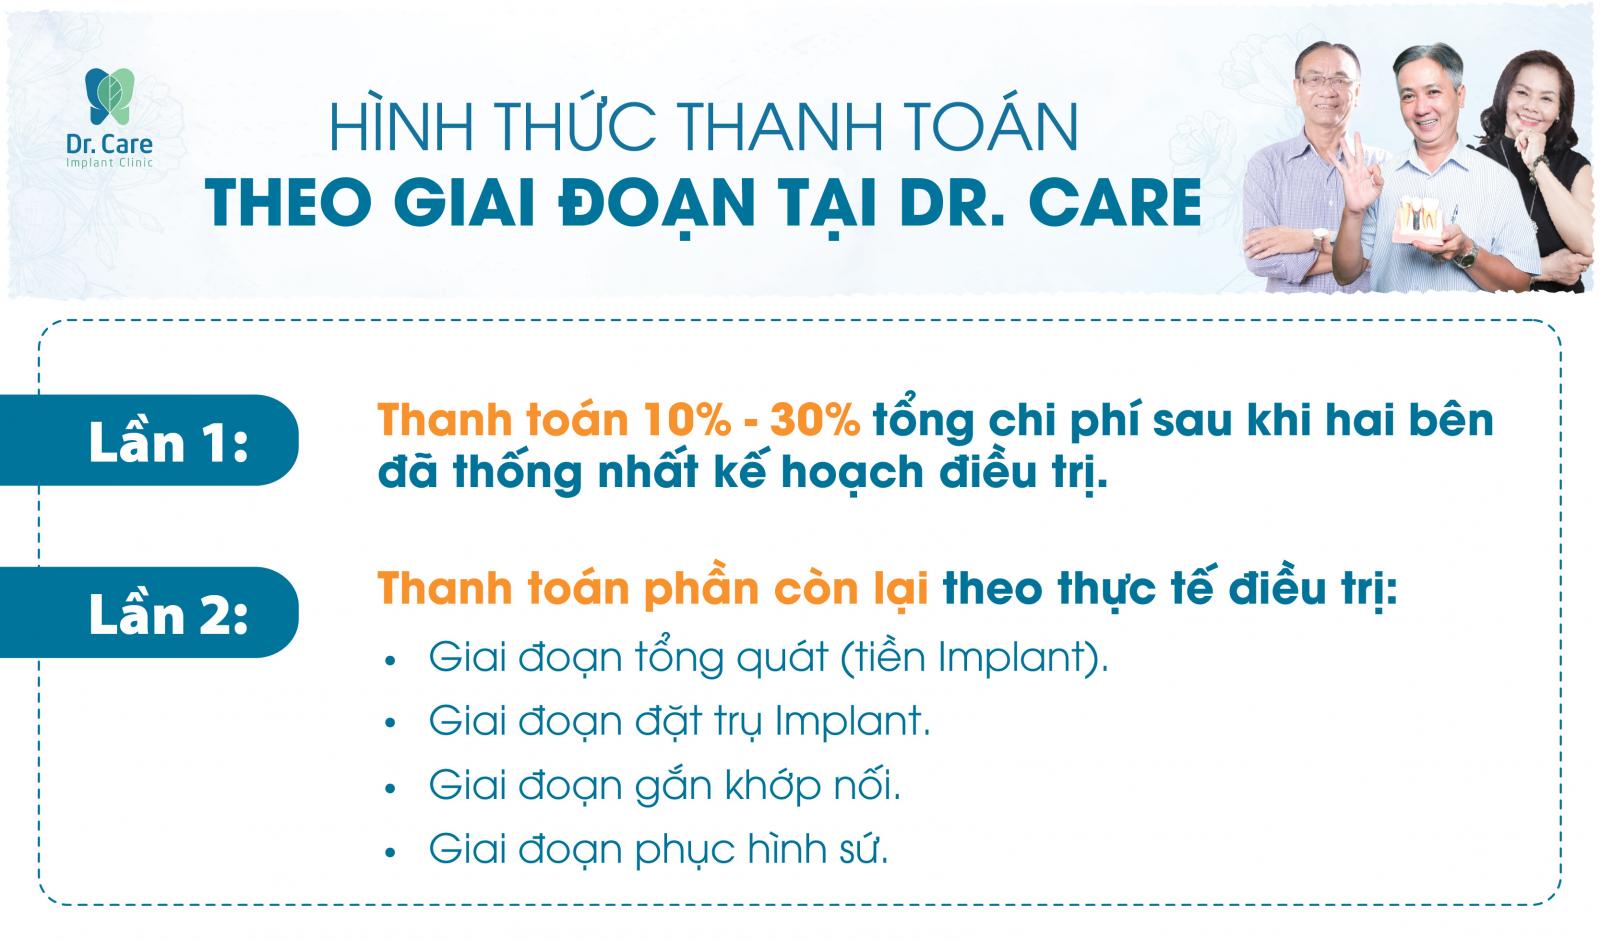 Phương thức thanh toán tại nha khoa Dr. Care TPHCM